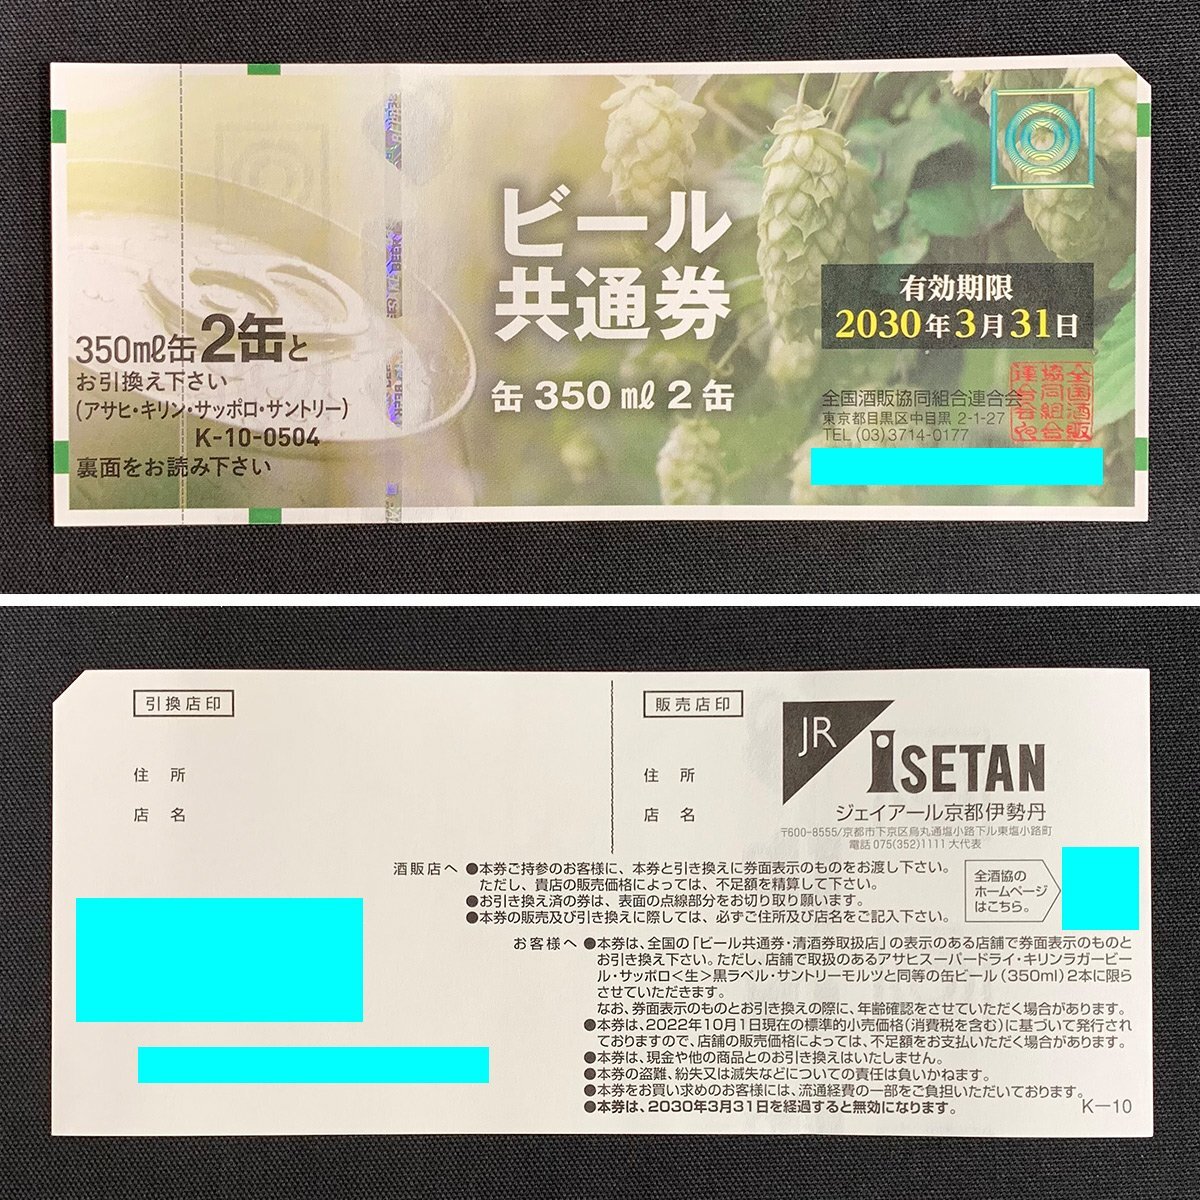 SU2c [ бесплатная доставка ] вся страна sake .. такой же комплект . полосный .. Sapporo жираф пиво подарочный сертификат пиво общий талон итого 141 листов 72,928 иен минут 